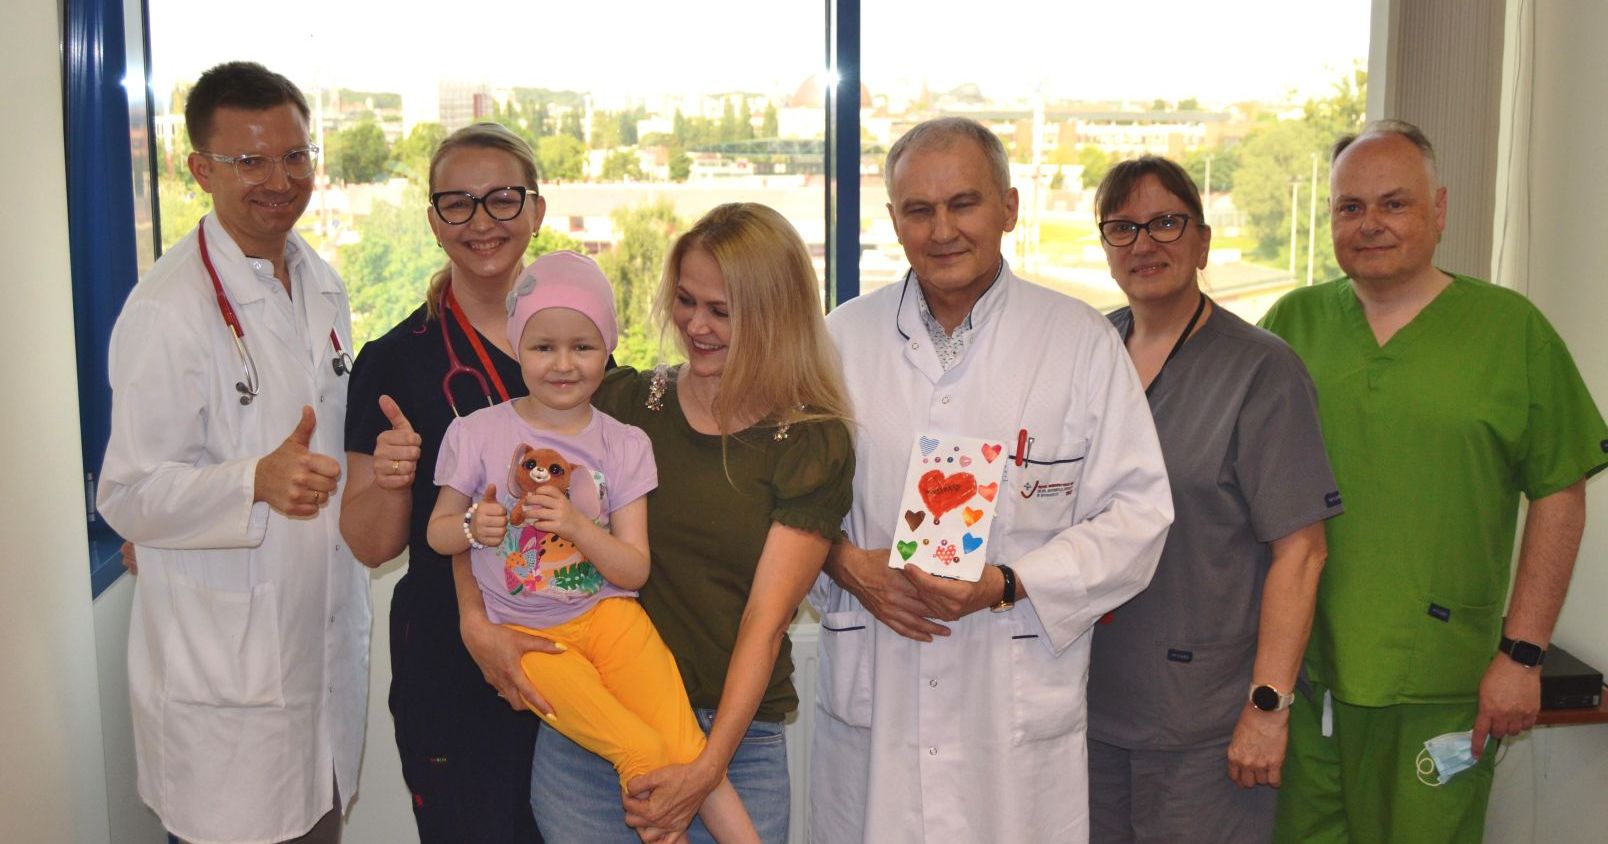 Zespół prof. Jana Styczyńskiego z powodzeniem przeprowadził pierwszą terapię CAR-T. Pacjentką była pięcioletnia dziewczynka Zespół prof. Jana Styczyńskiego z powodzeniem przeprowadził pierwszą terapię CAR-T. Pacjentką była pięcioletnia dziewczynka